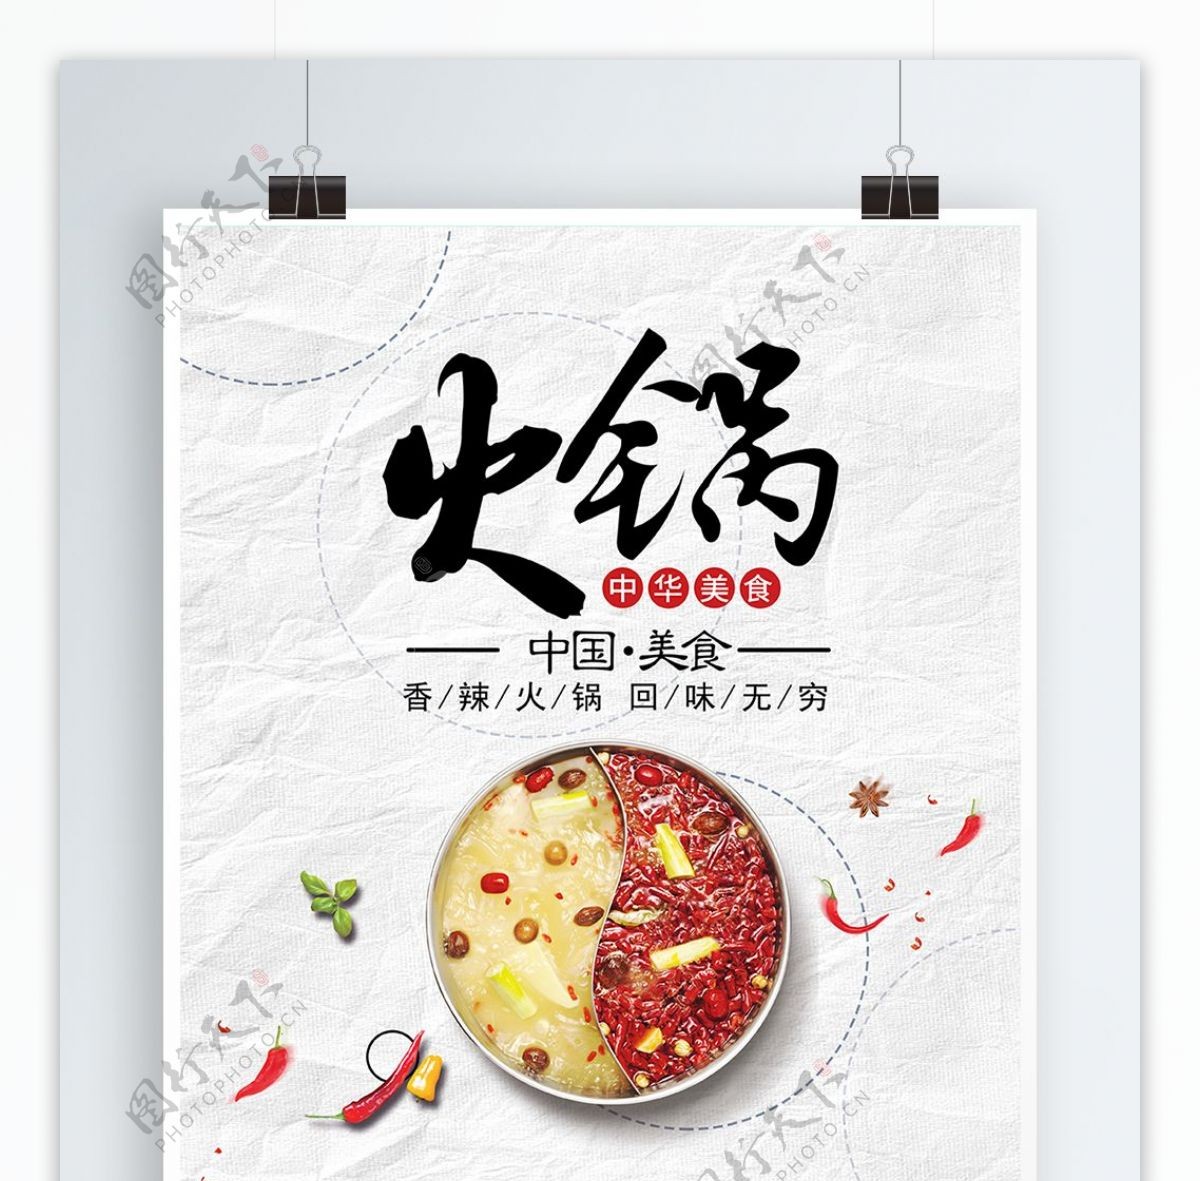 创意中国美食火锅餐饮海报